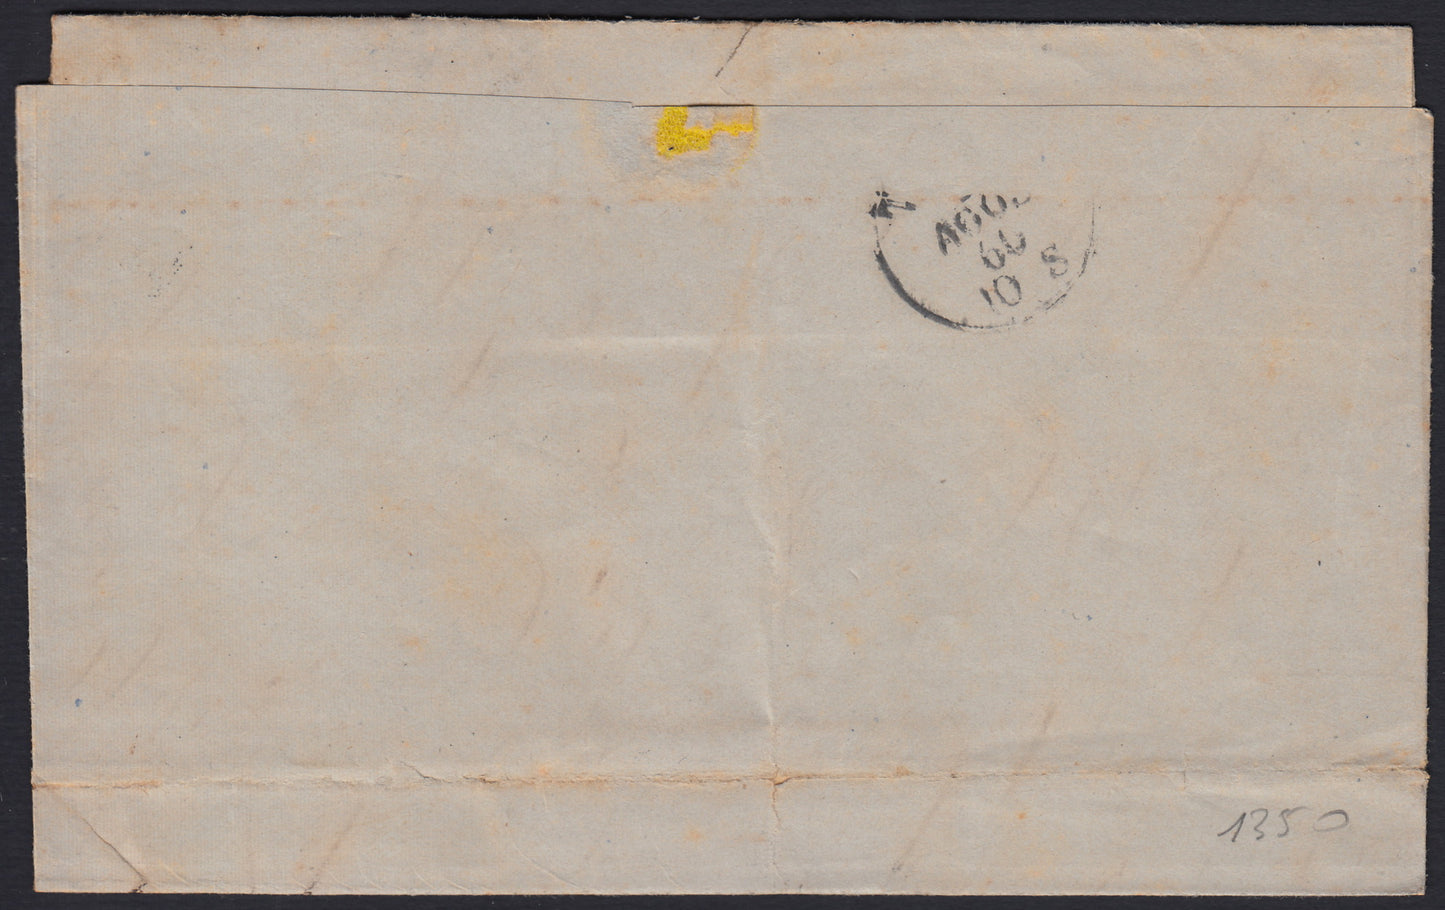 258 - 1860 - IV emissione, Lettera spedita da Genova per Torino 2/8/60 affrancata con c. 40 rosso tiratura 1860 (16C)